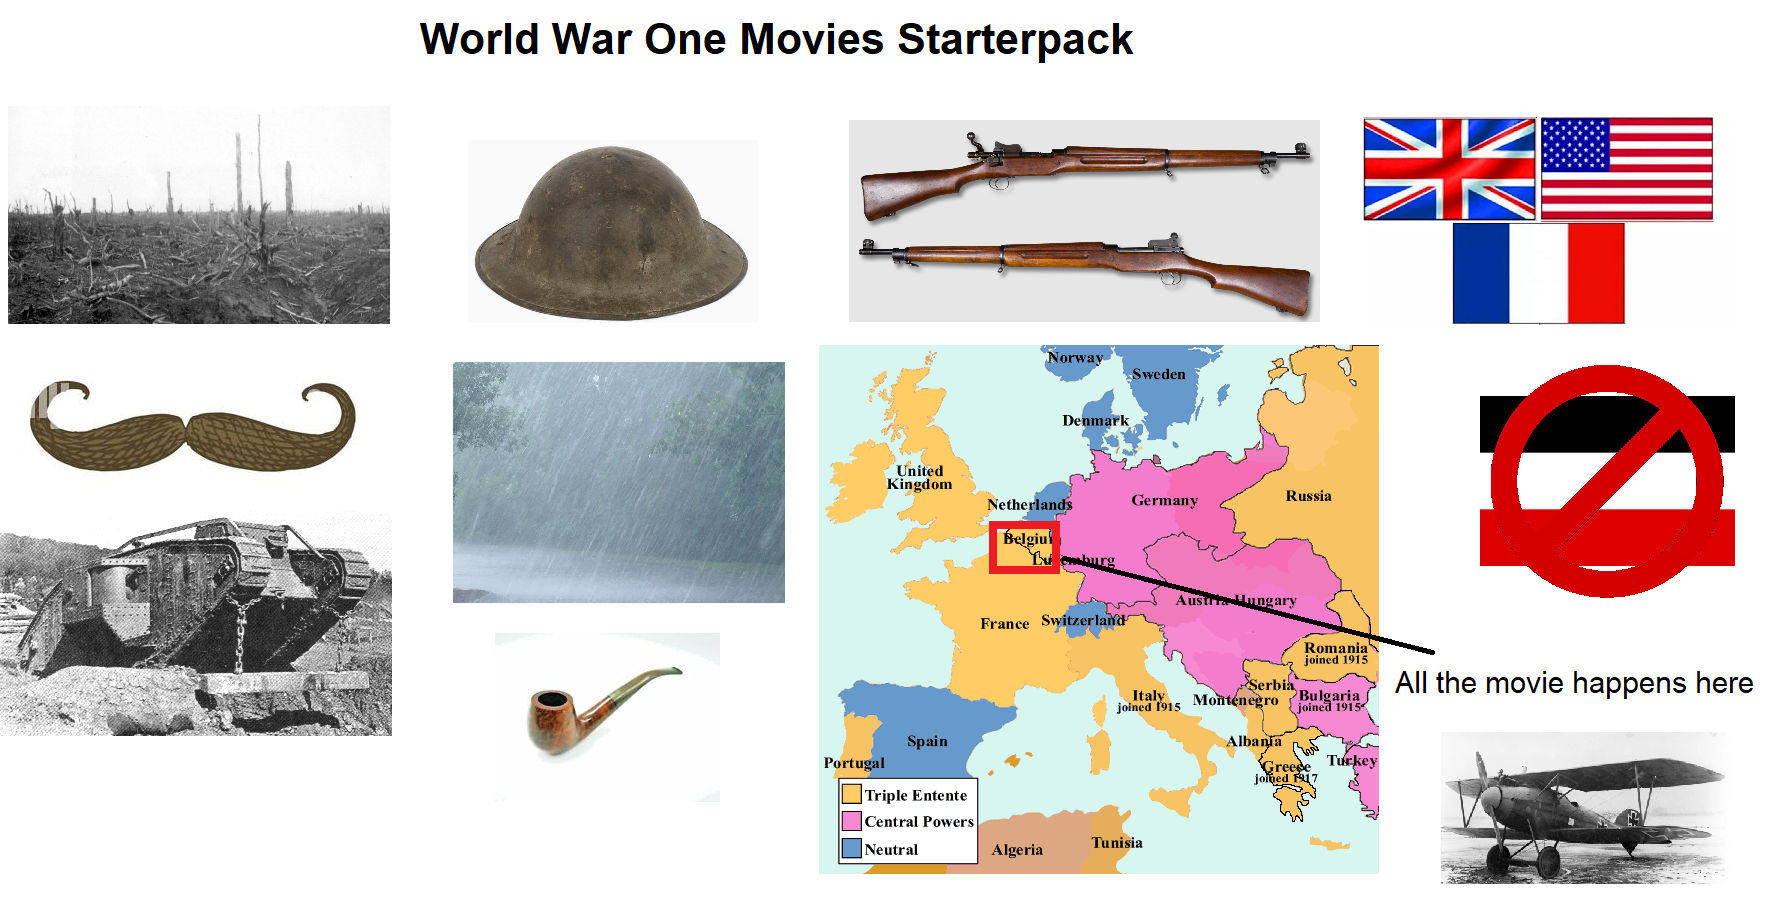 Every World War 1 movie starterpack